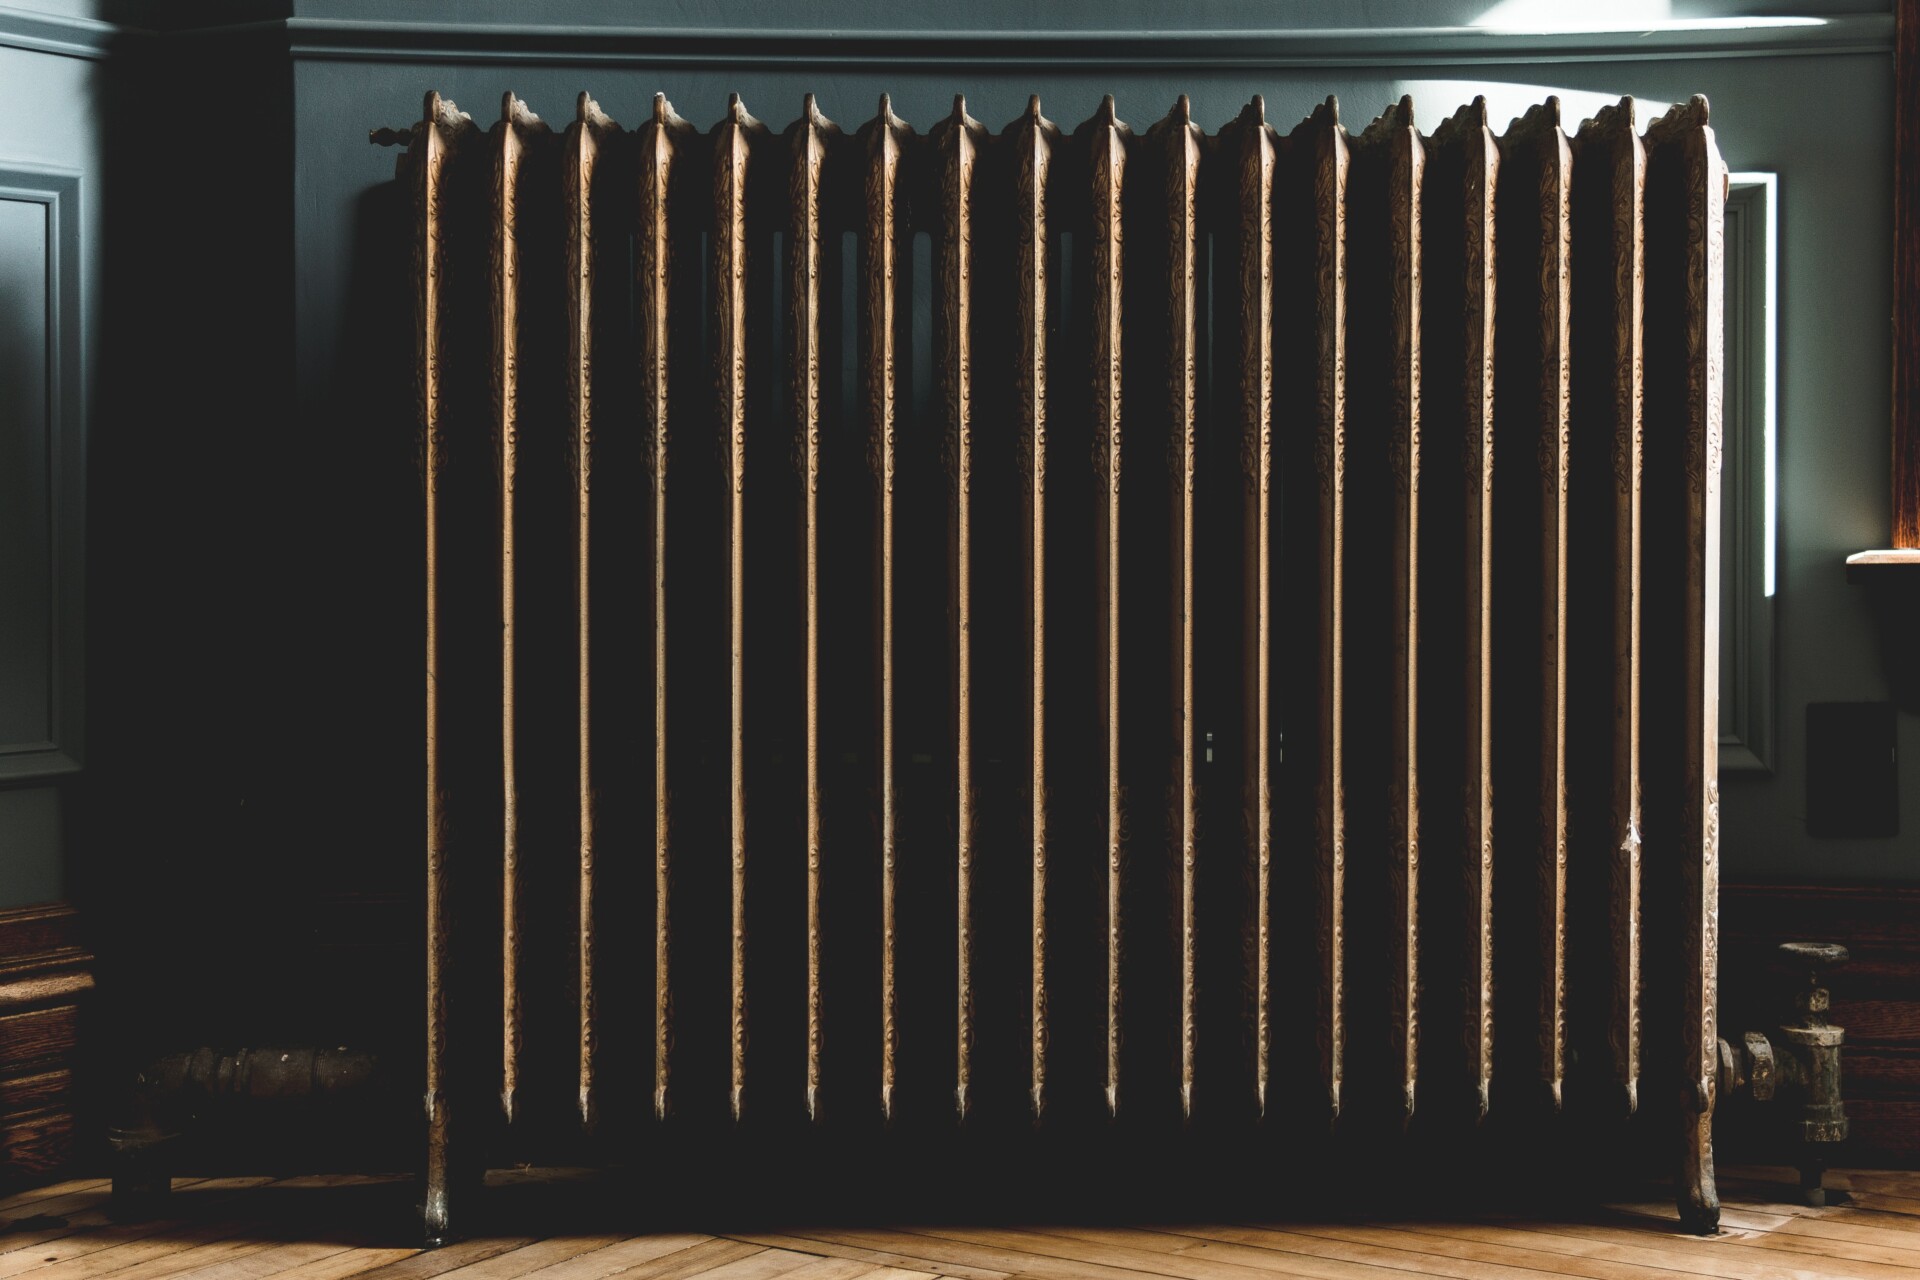 En radiator. Bildet er brukt i en artikkel som omhandler vannbehandling og avkalkning.